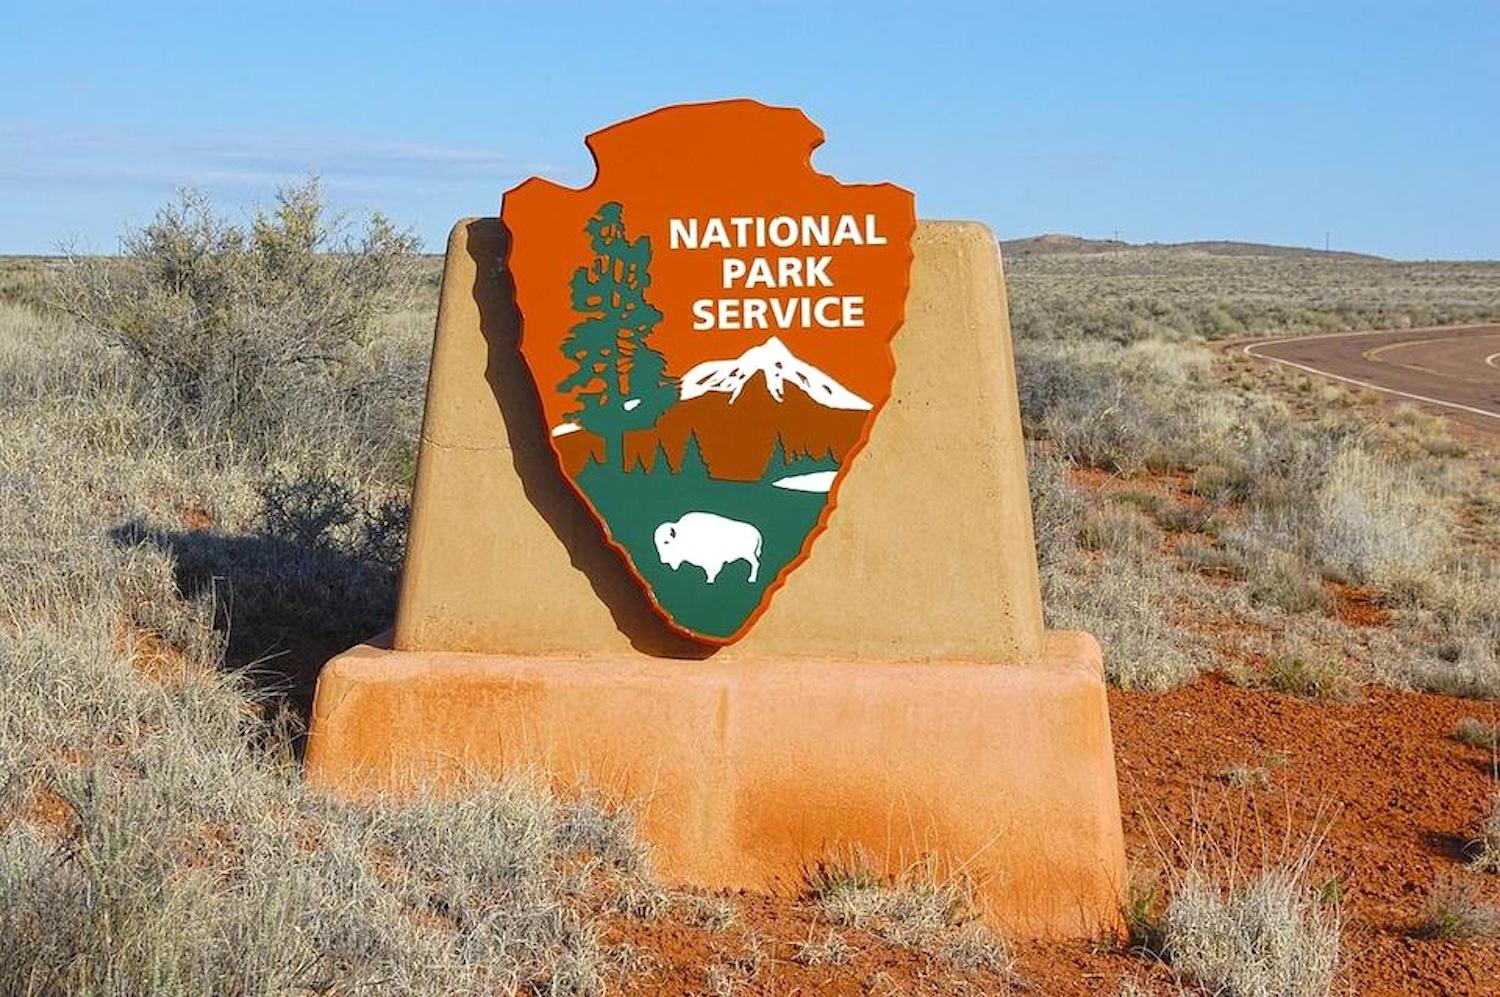 National Park Service entrance sign.